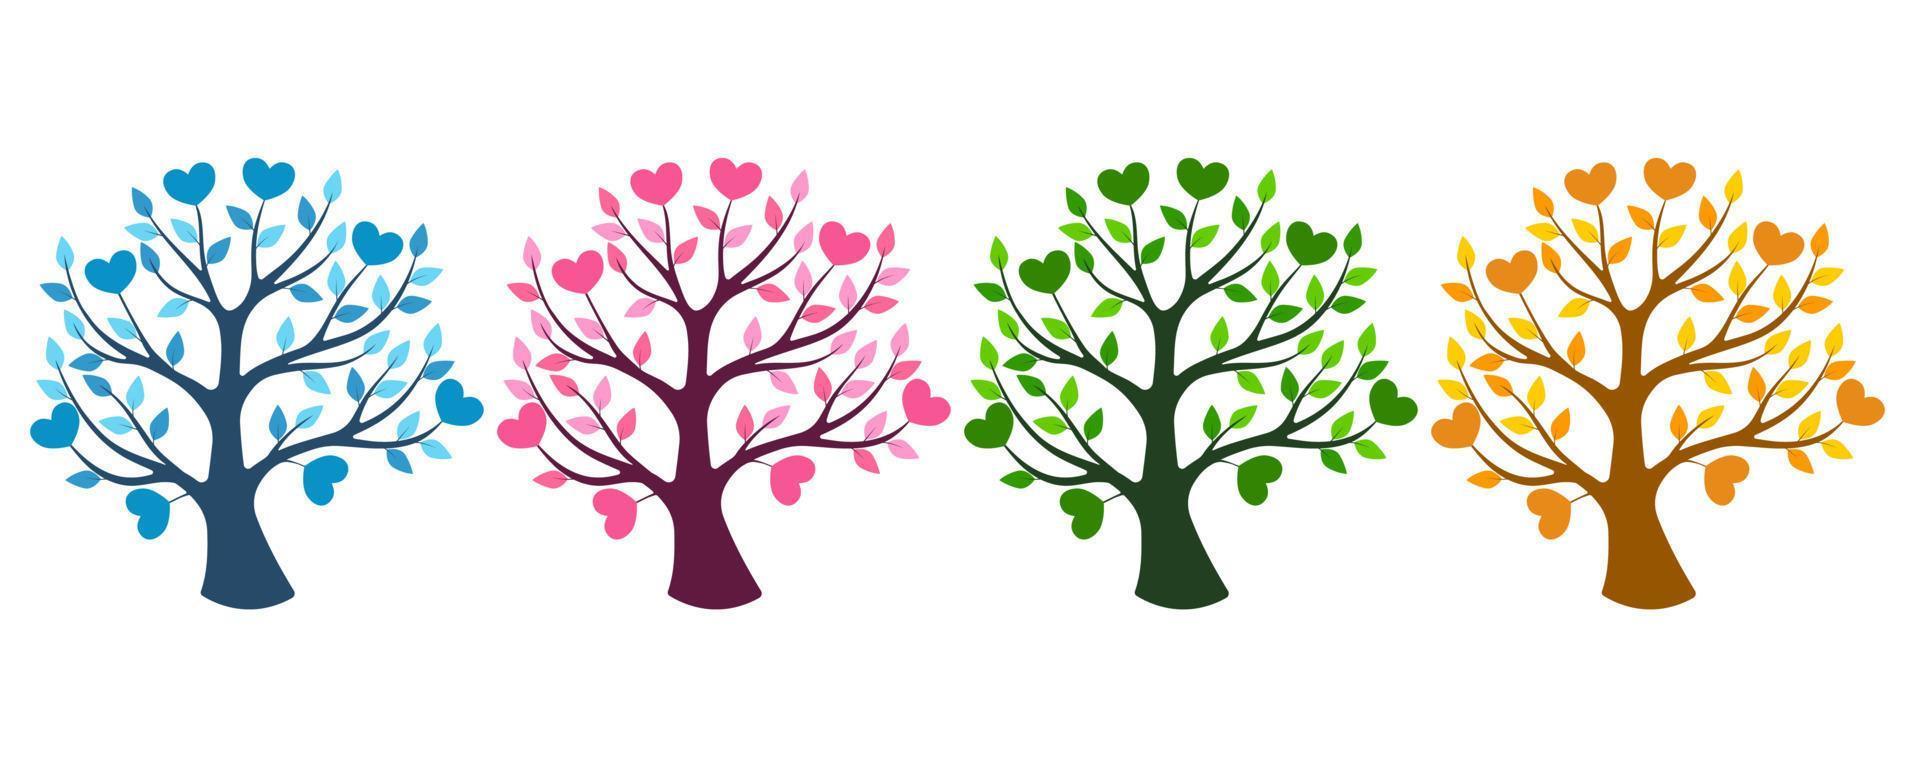 Satz von vier Bäumen entsprechend den Jahreszeiten - Winter, Frühling, Sommer, Herbst. Blätter und Herzen auf Ästen vektor